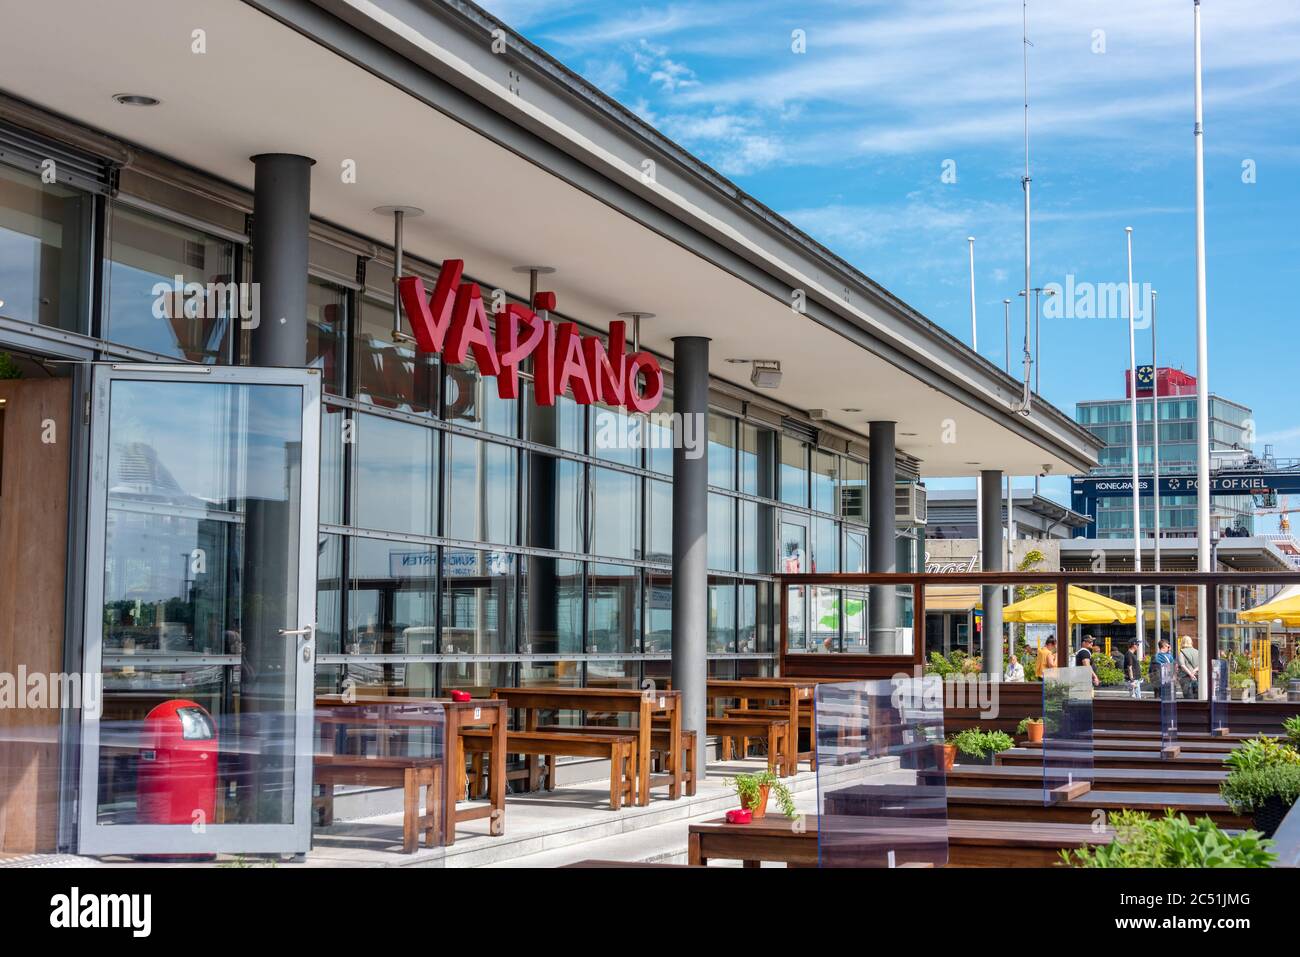 Schriftzug Vapiano der Restaurantkette gleichen Namens im Hafen von Kiel Stock Photo